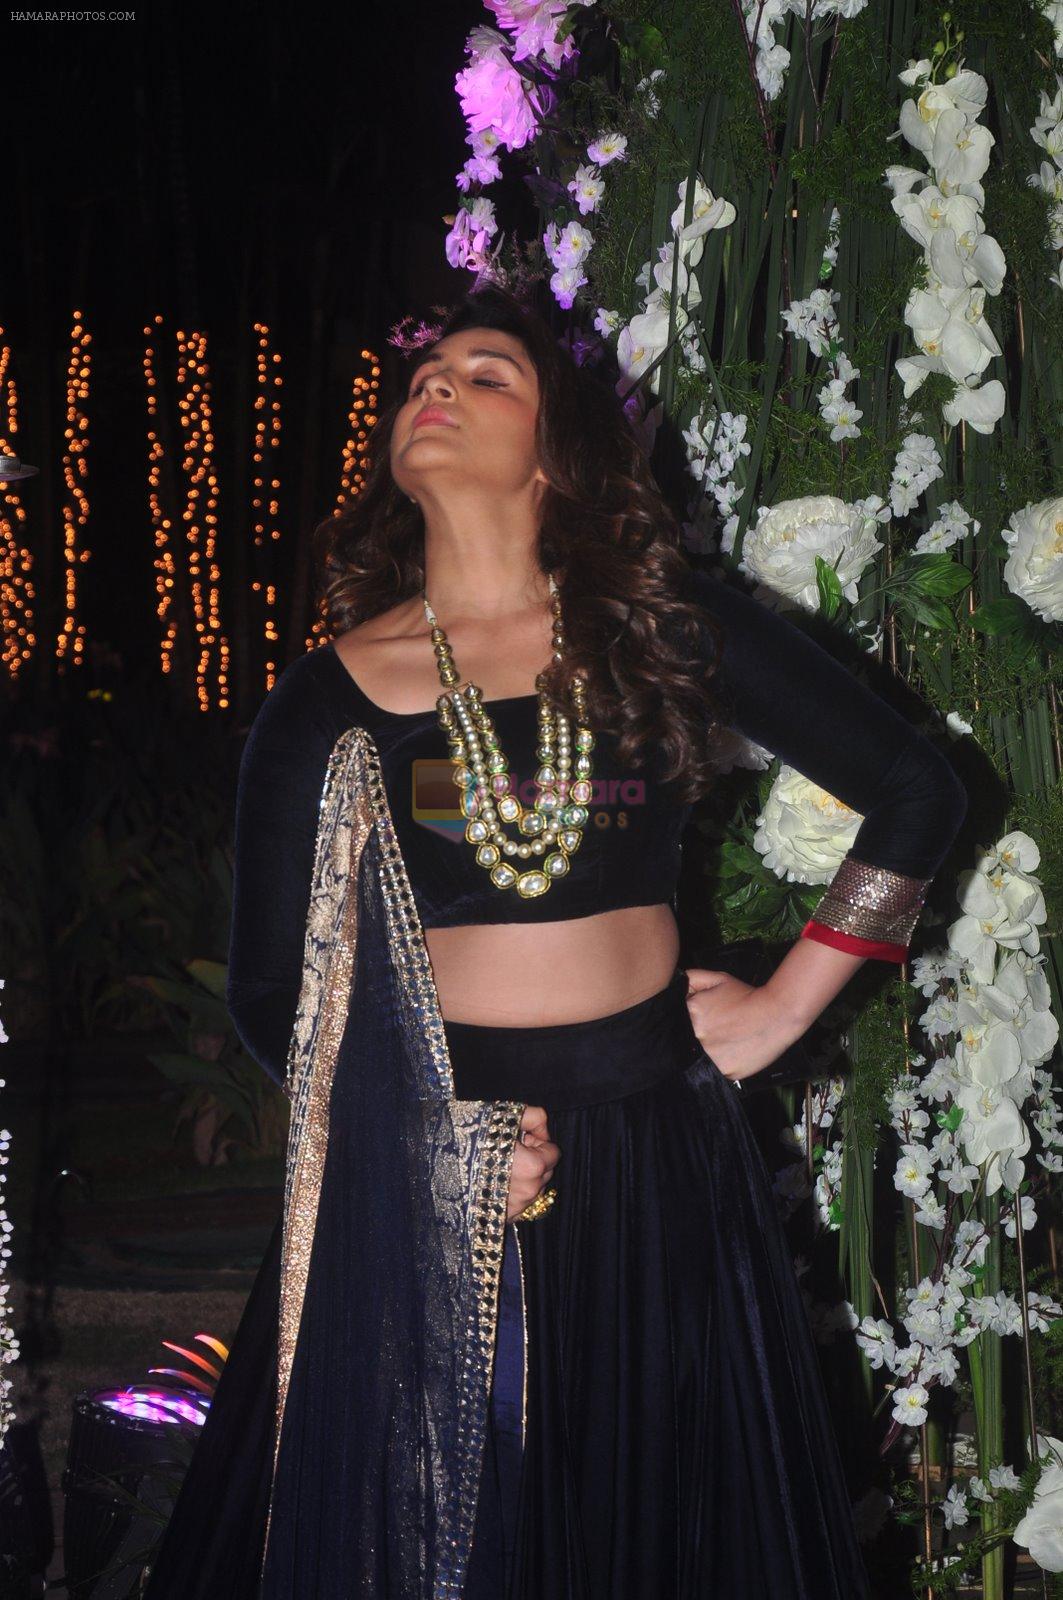 Parineeti Chopra at Sangeet ceremony of Riddhi Malhotra and Tejas Talwalkar in J W Marriott, Mumbai on 13th Dec 2014